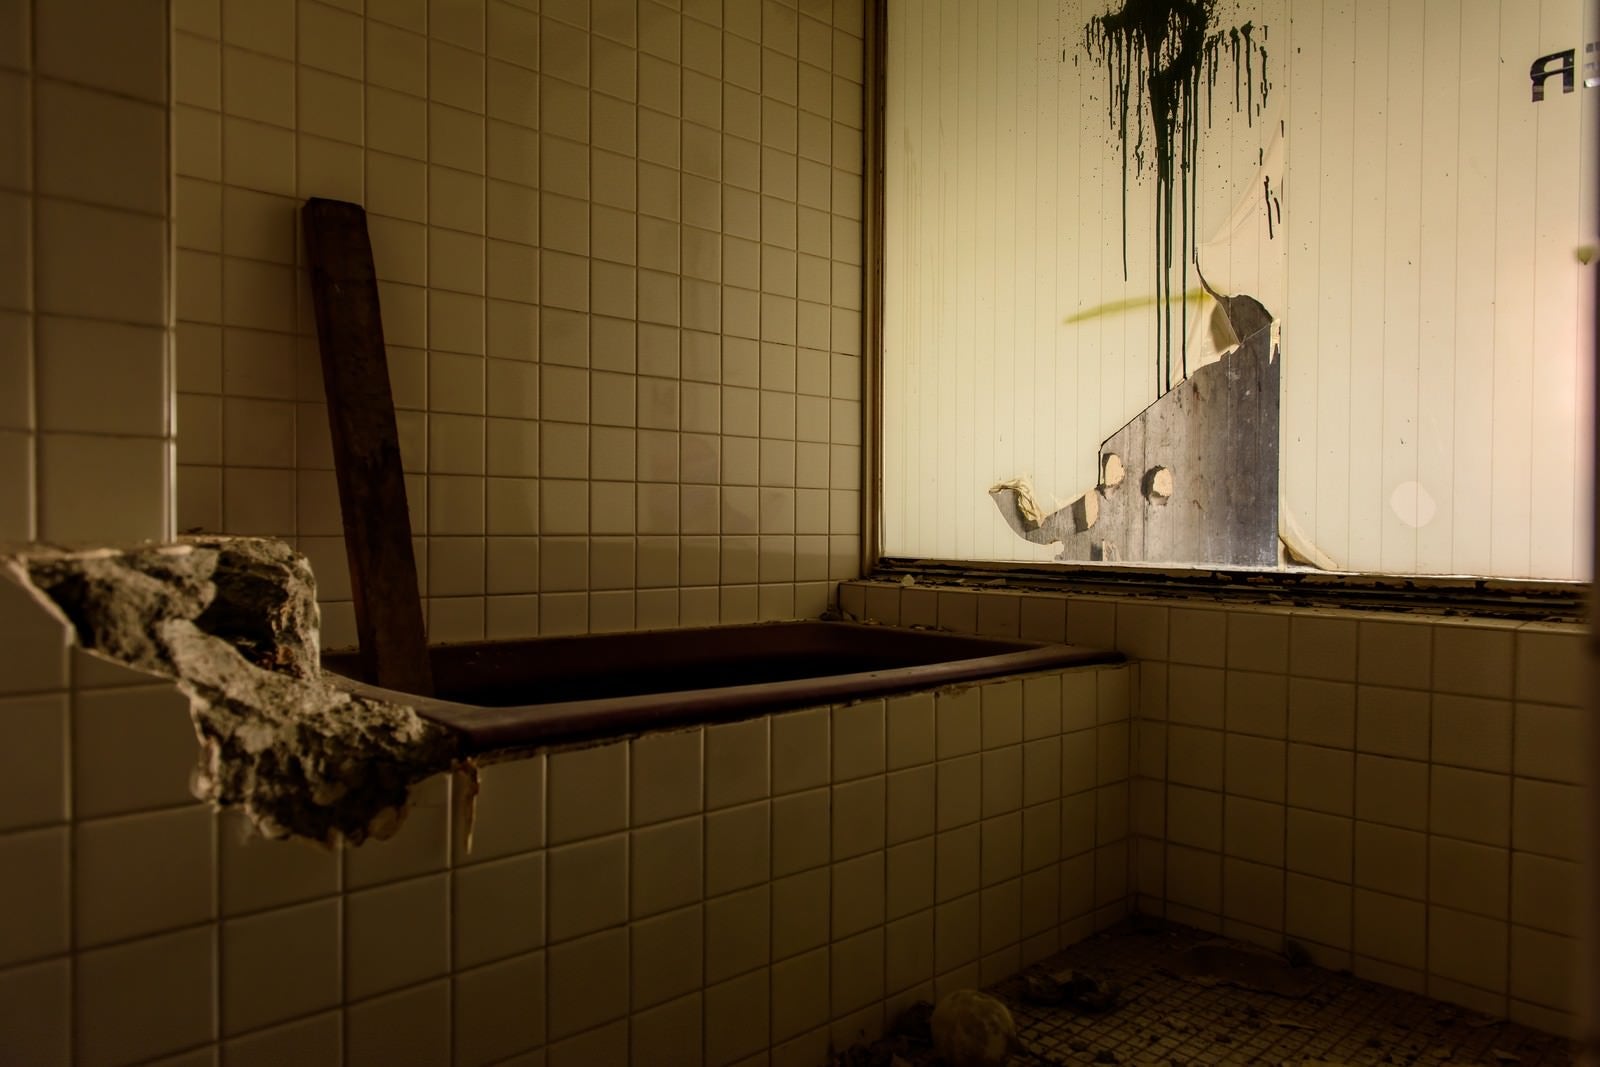 「ホテル廃墟のお風呂場 | フリー素材のぱくたそ」の写真